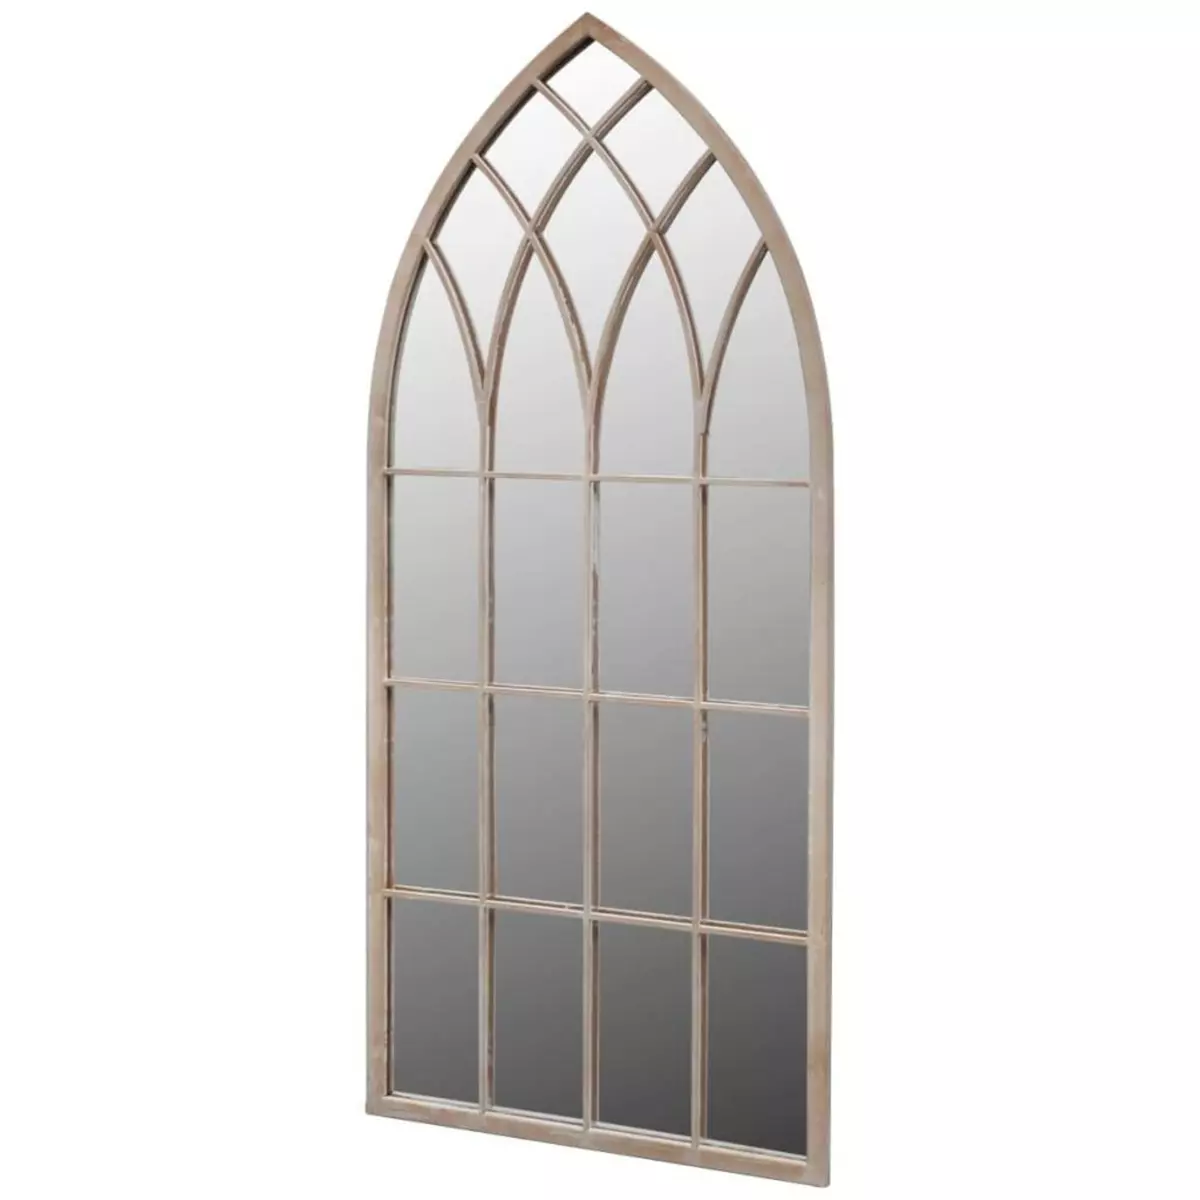 VIDAXL Miroir de jardin d'arche gotique 50x115 cm Interieur/exterieur